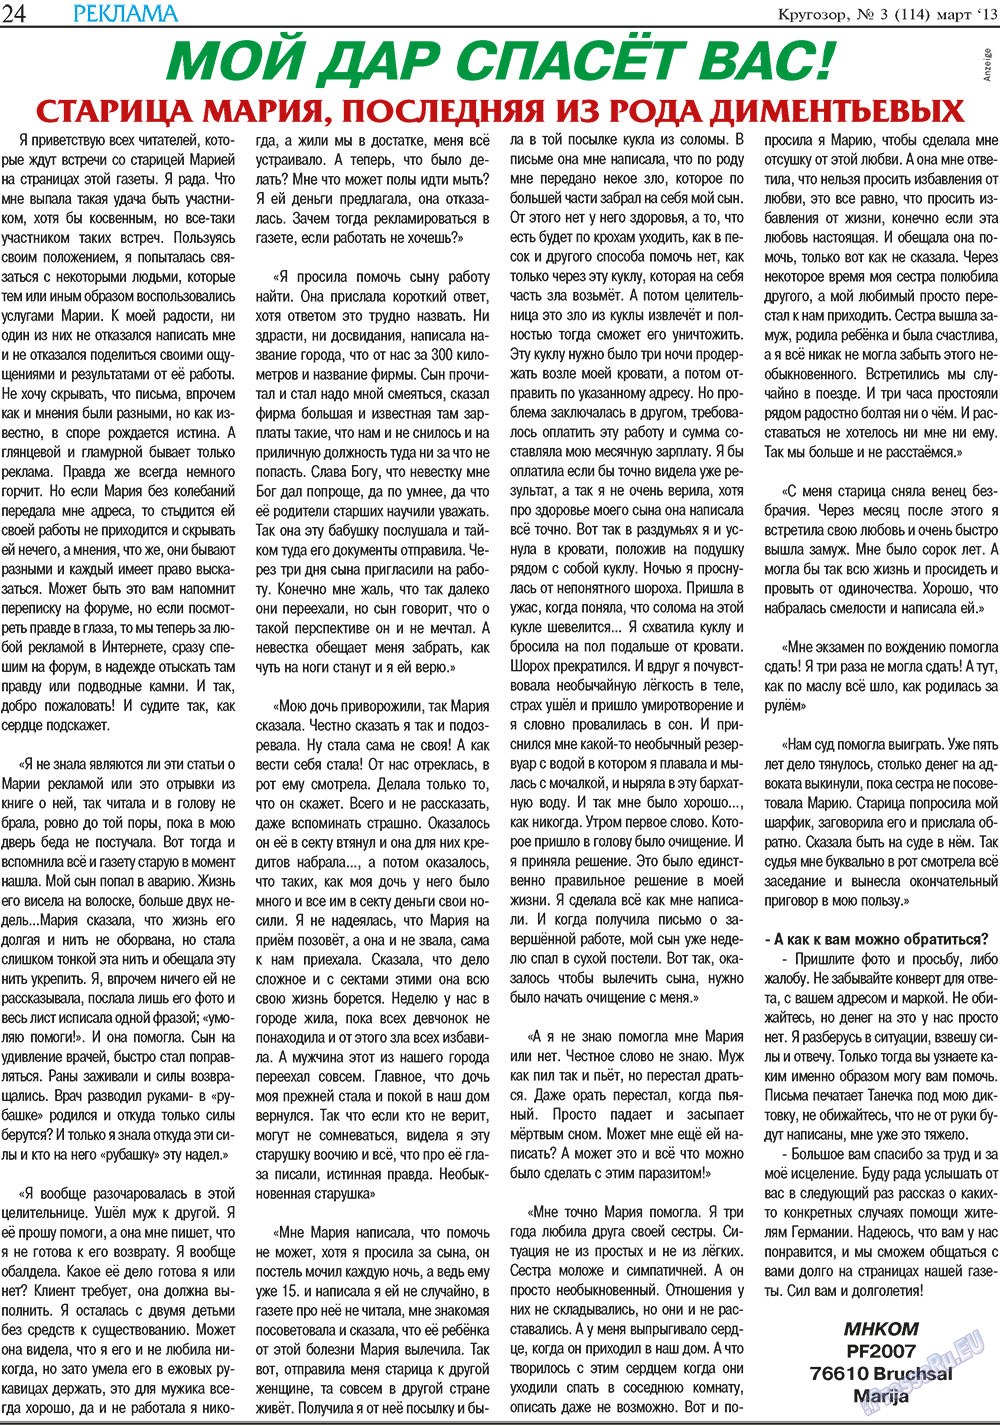 Кругозор, газета. 2013 №3 стр.24